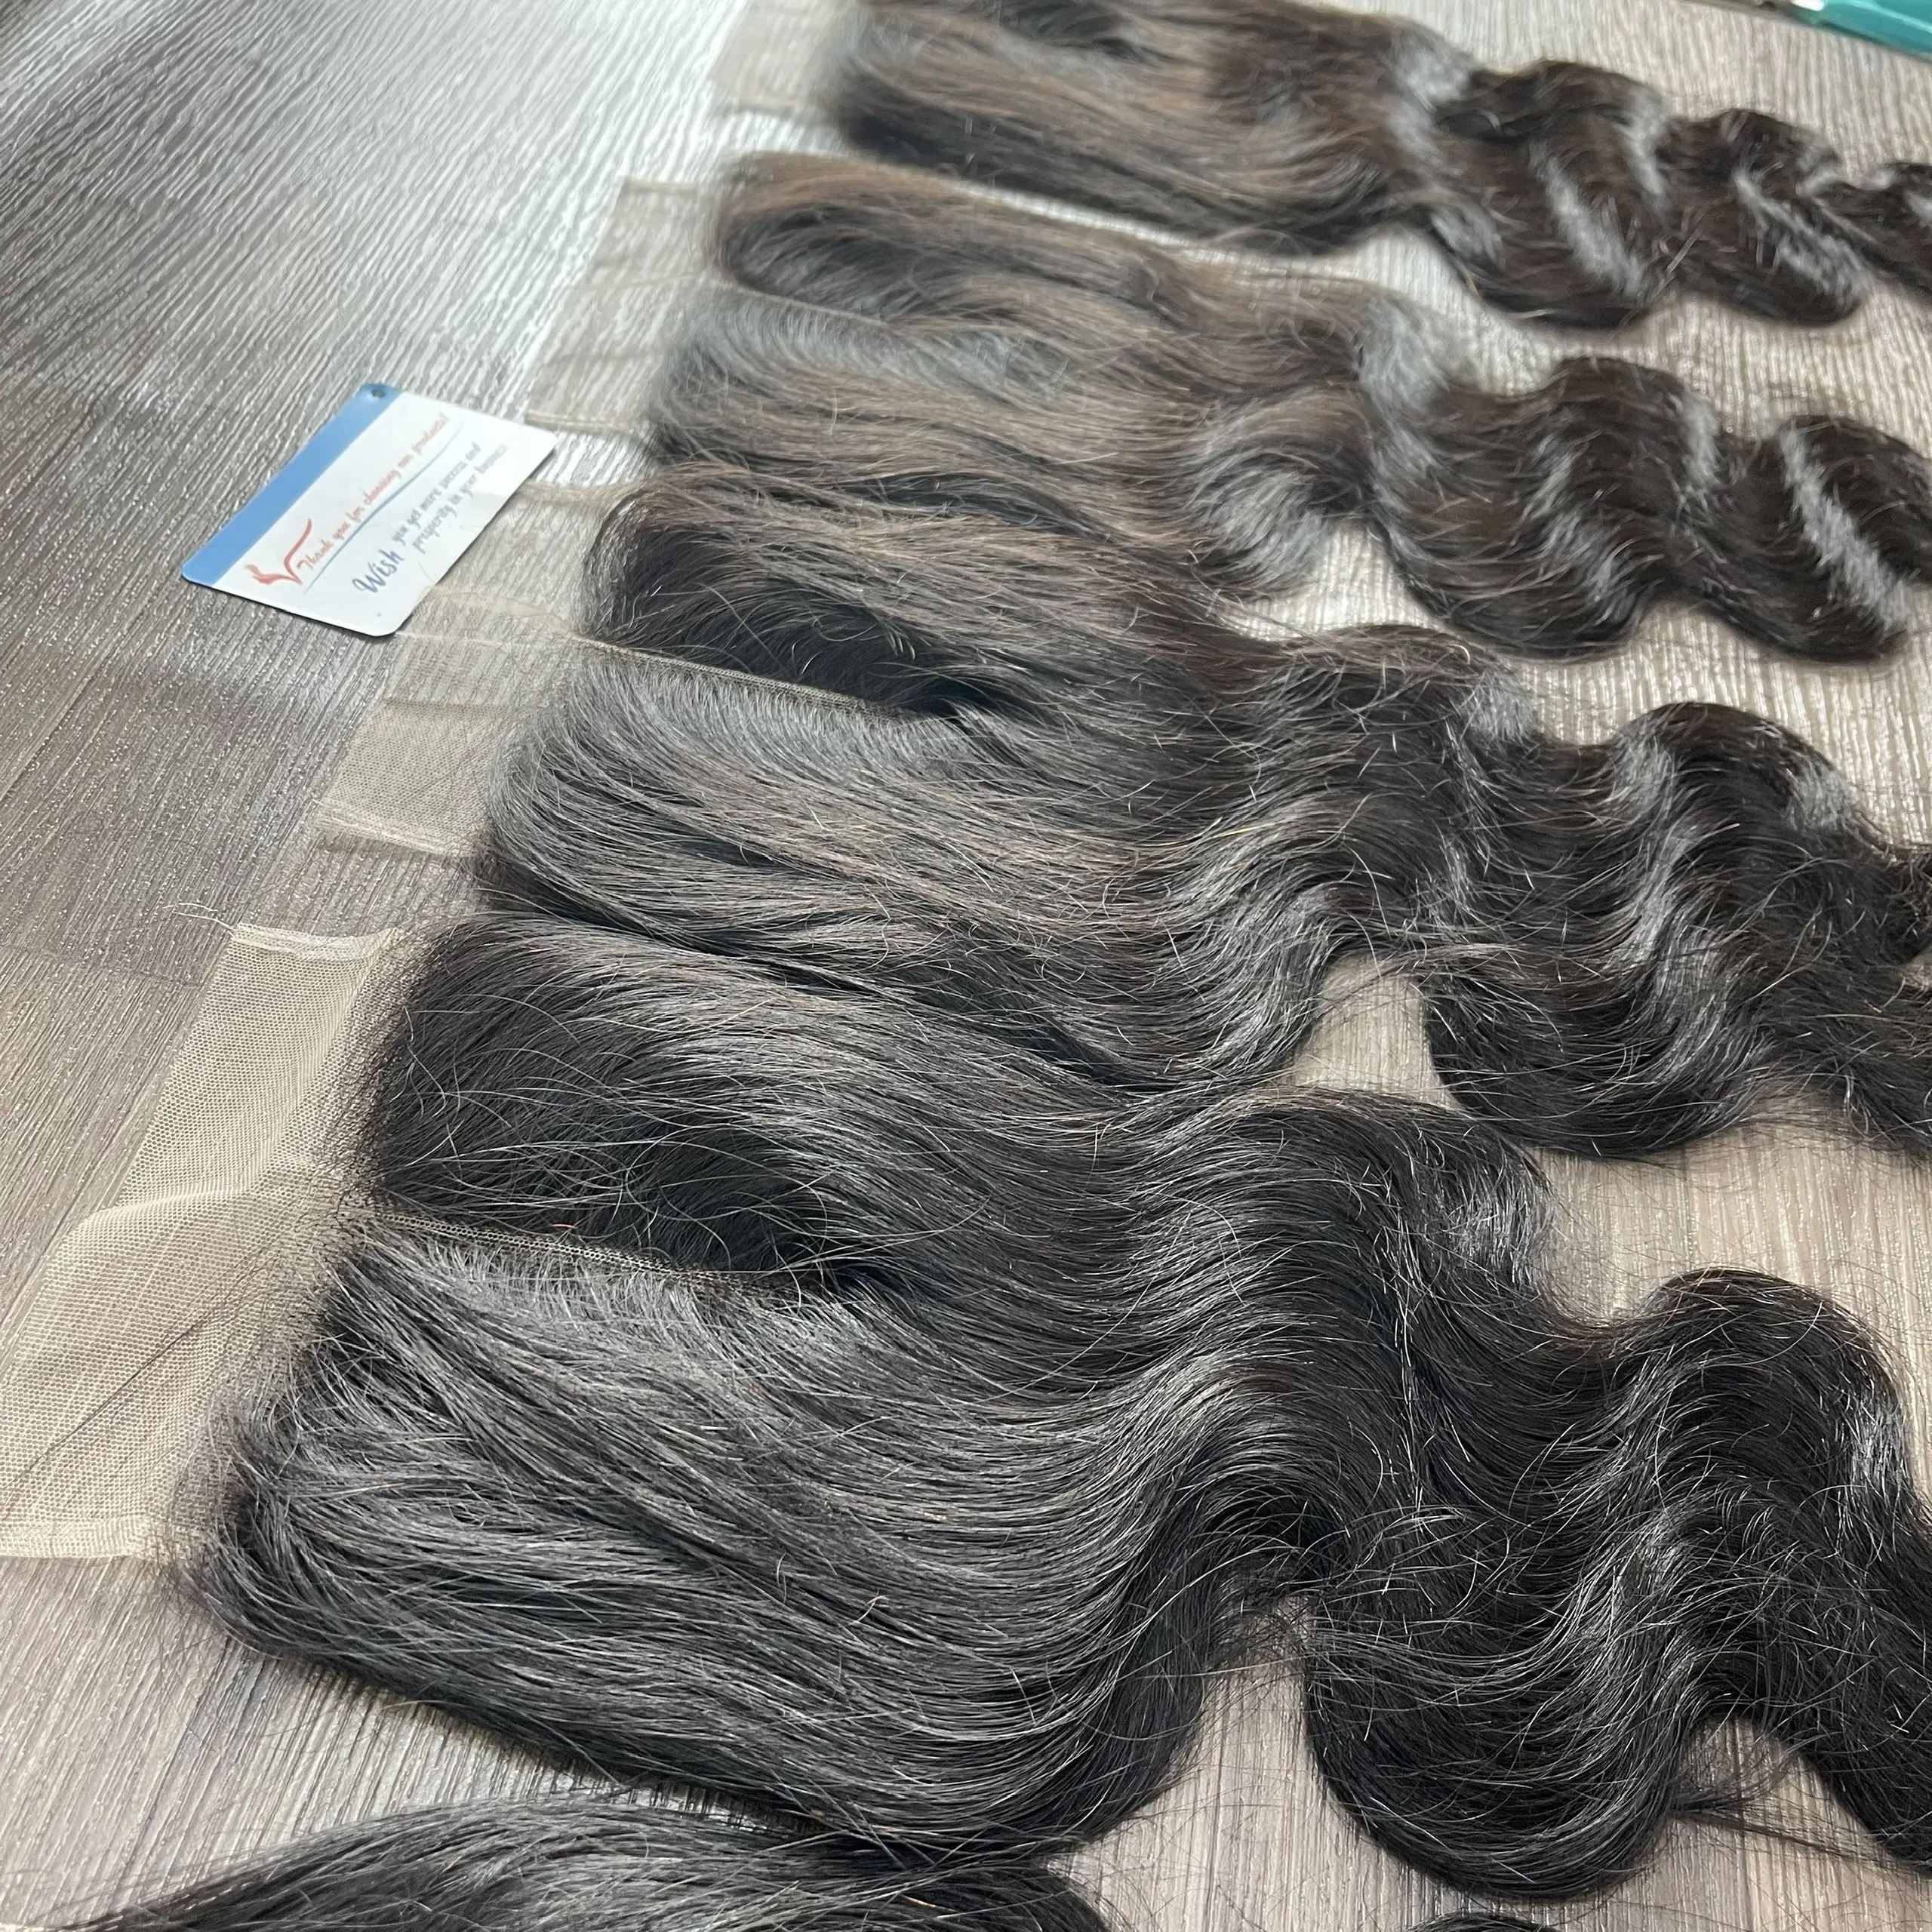 PRIX PAS CHER!! Vente chaude Frontale et fermeture Body Wave Extension de cheveux humains vietnamiens Cheveux humains vietnamiens noirs naturels